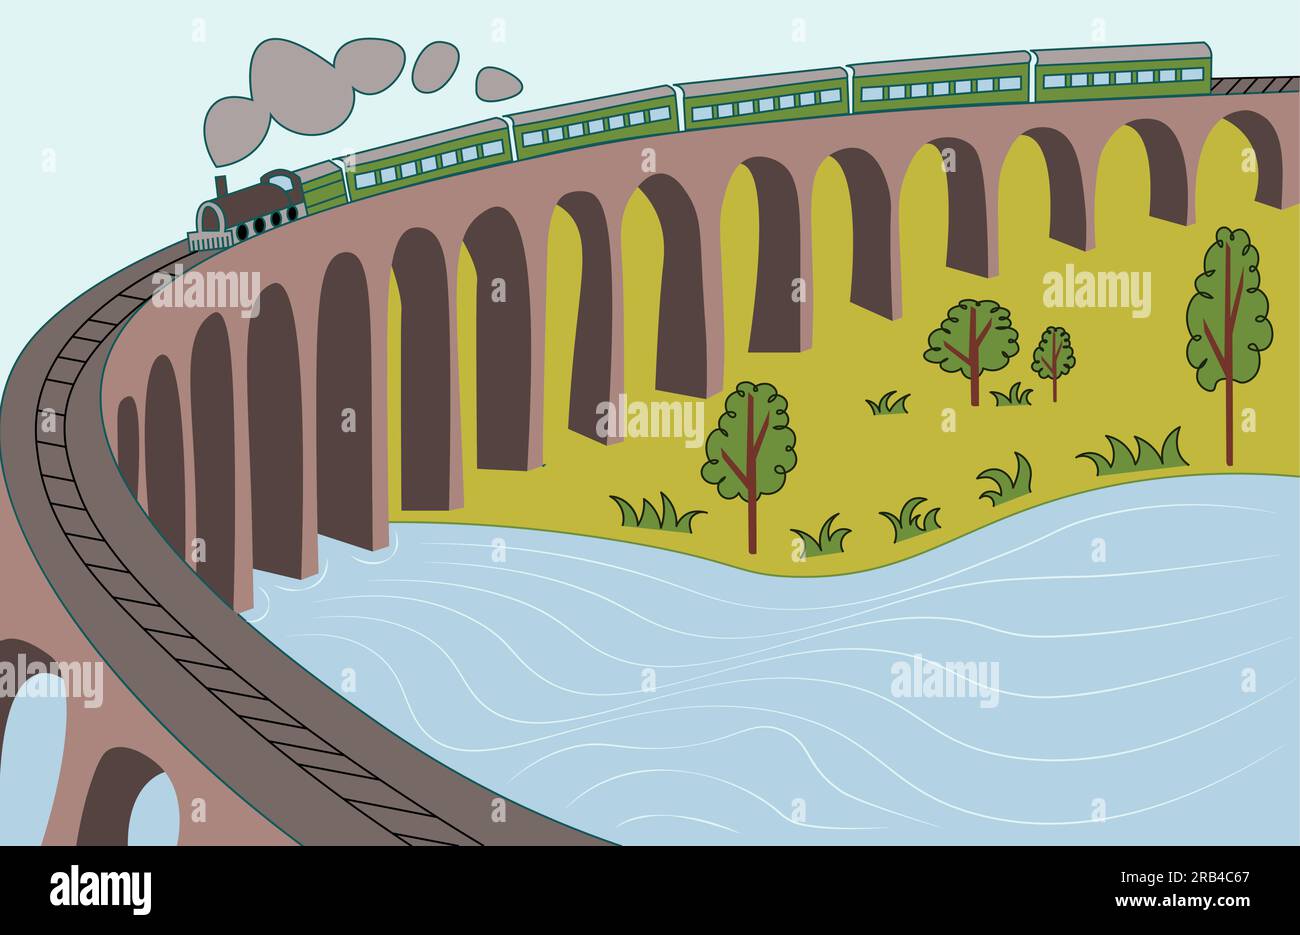 Landschaftslandschaft in der Nähe des Flusses mit Silhouetten aus Zug- und Brückenzeichnungen in einfachem Stil Stock Vektor